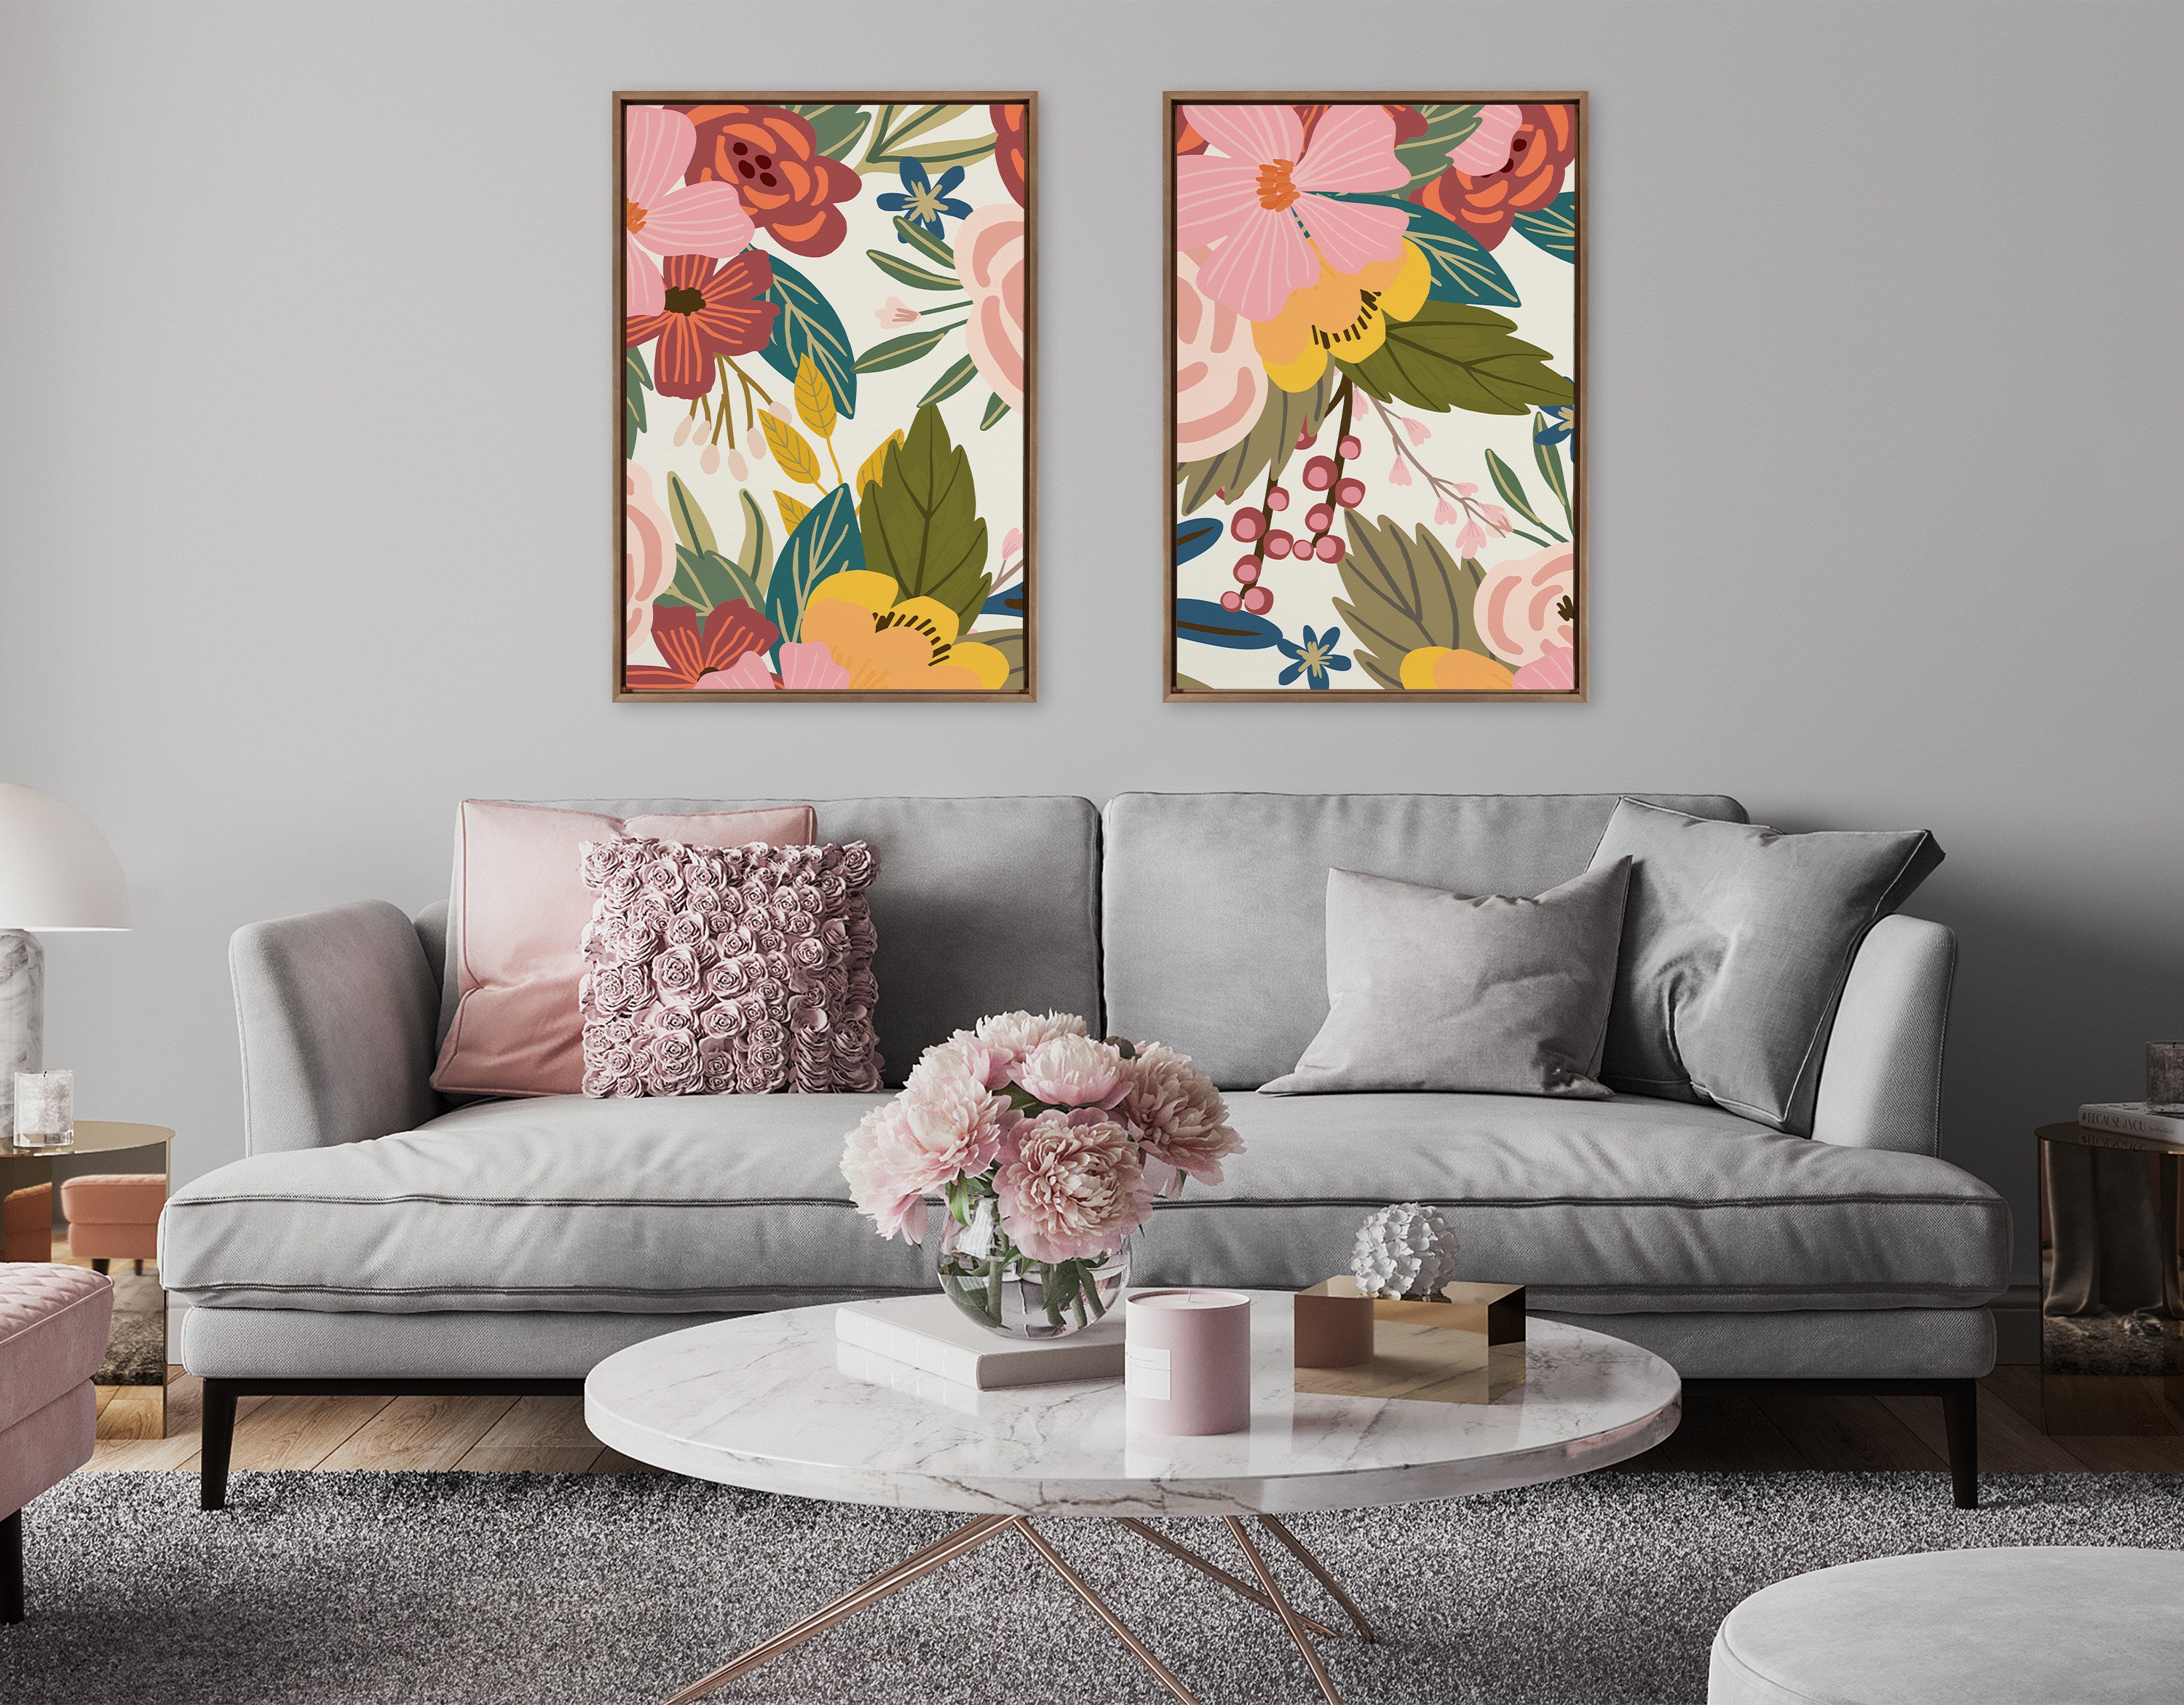 Sylvie Softly 1 and 2 Framed Canvas Art Set by Mia Charro